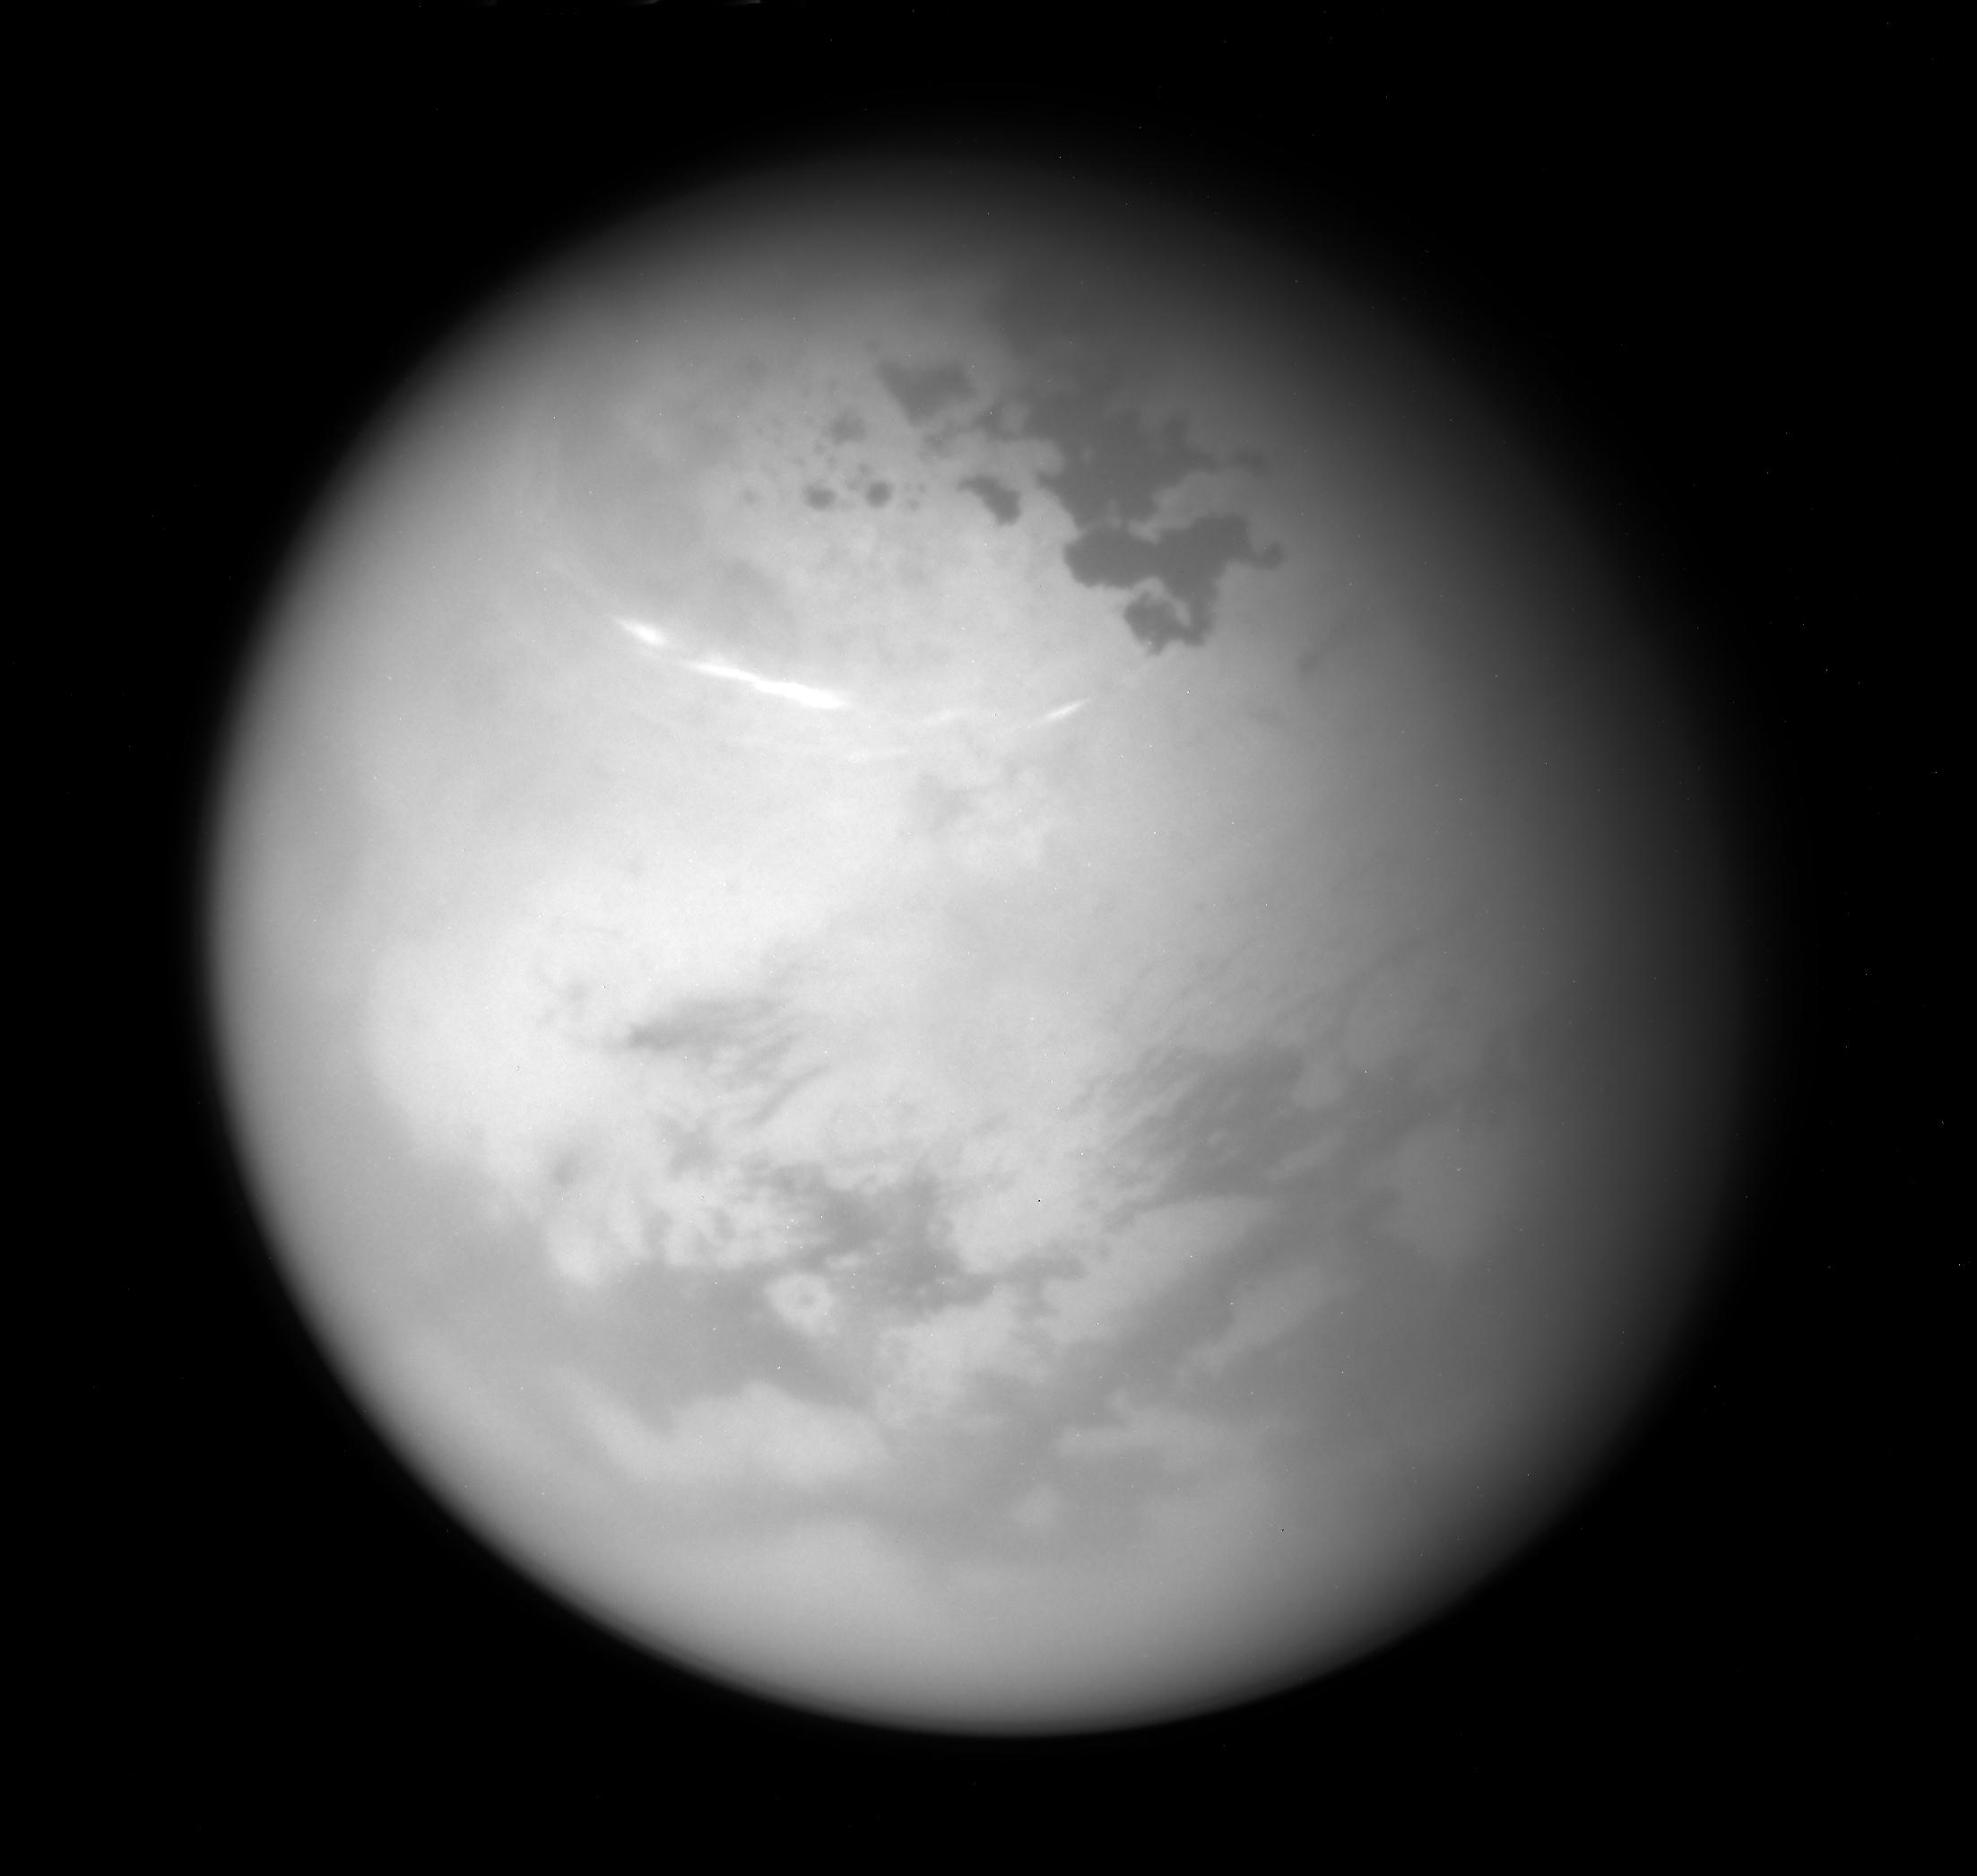 Northern Summer on Titan